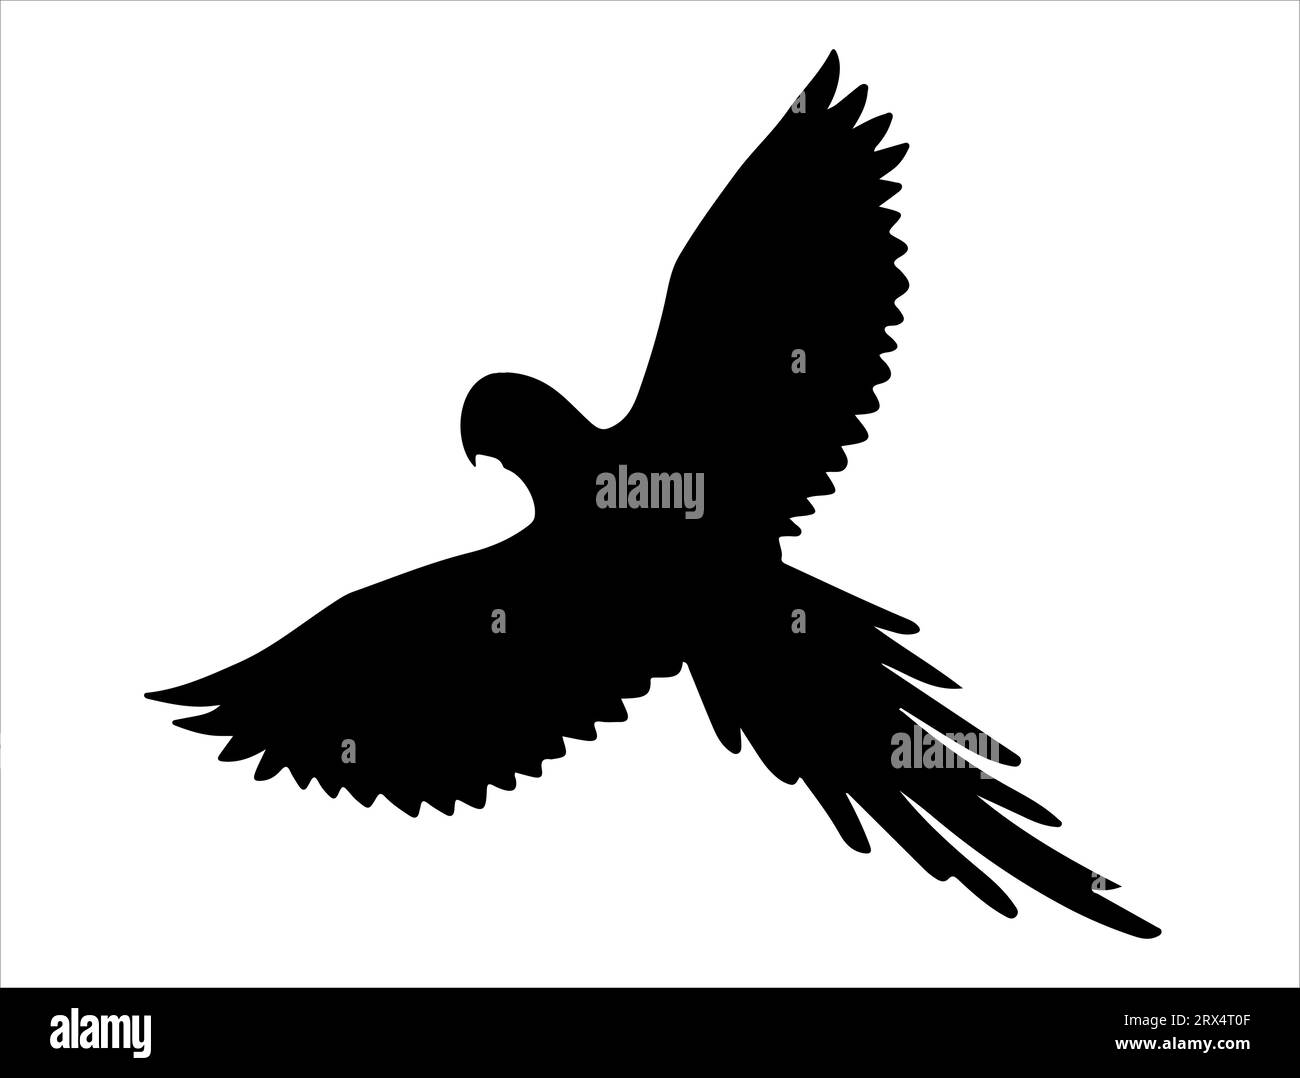 Parrot silhouette vector art white background Stock Vector Image & Art ...